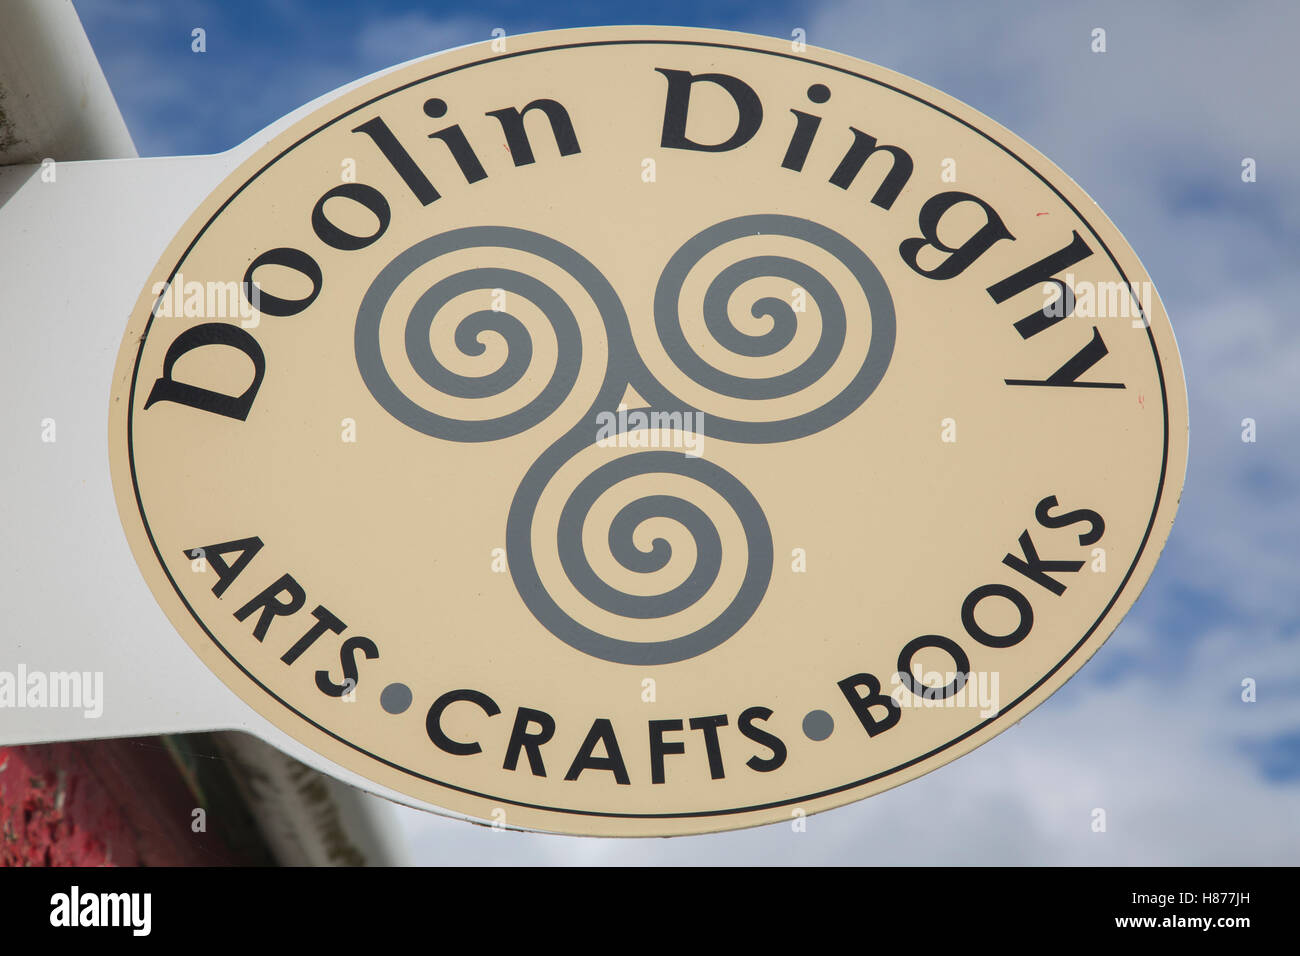 Doolin Dinghy Art, Craft and Book Shop Sign, Ireland Stock Photo